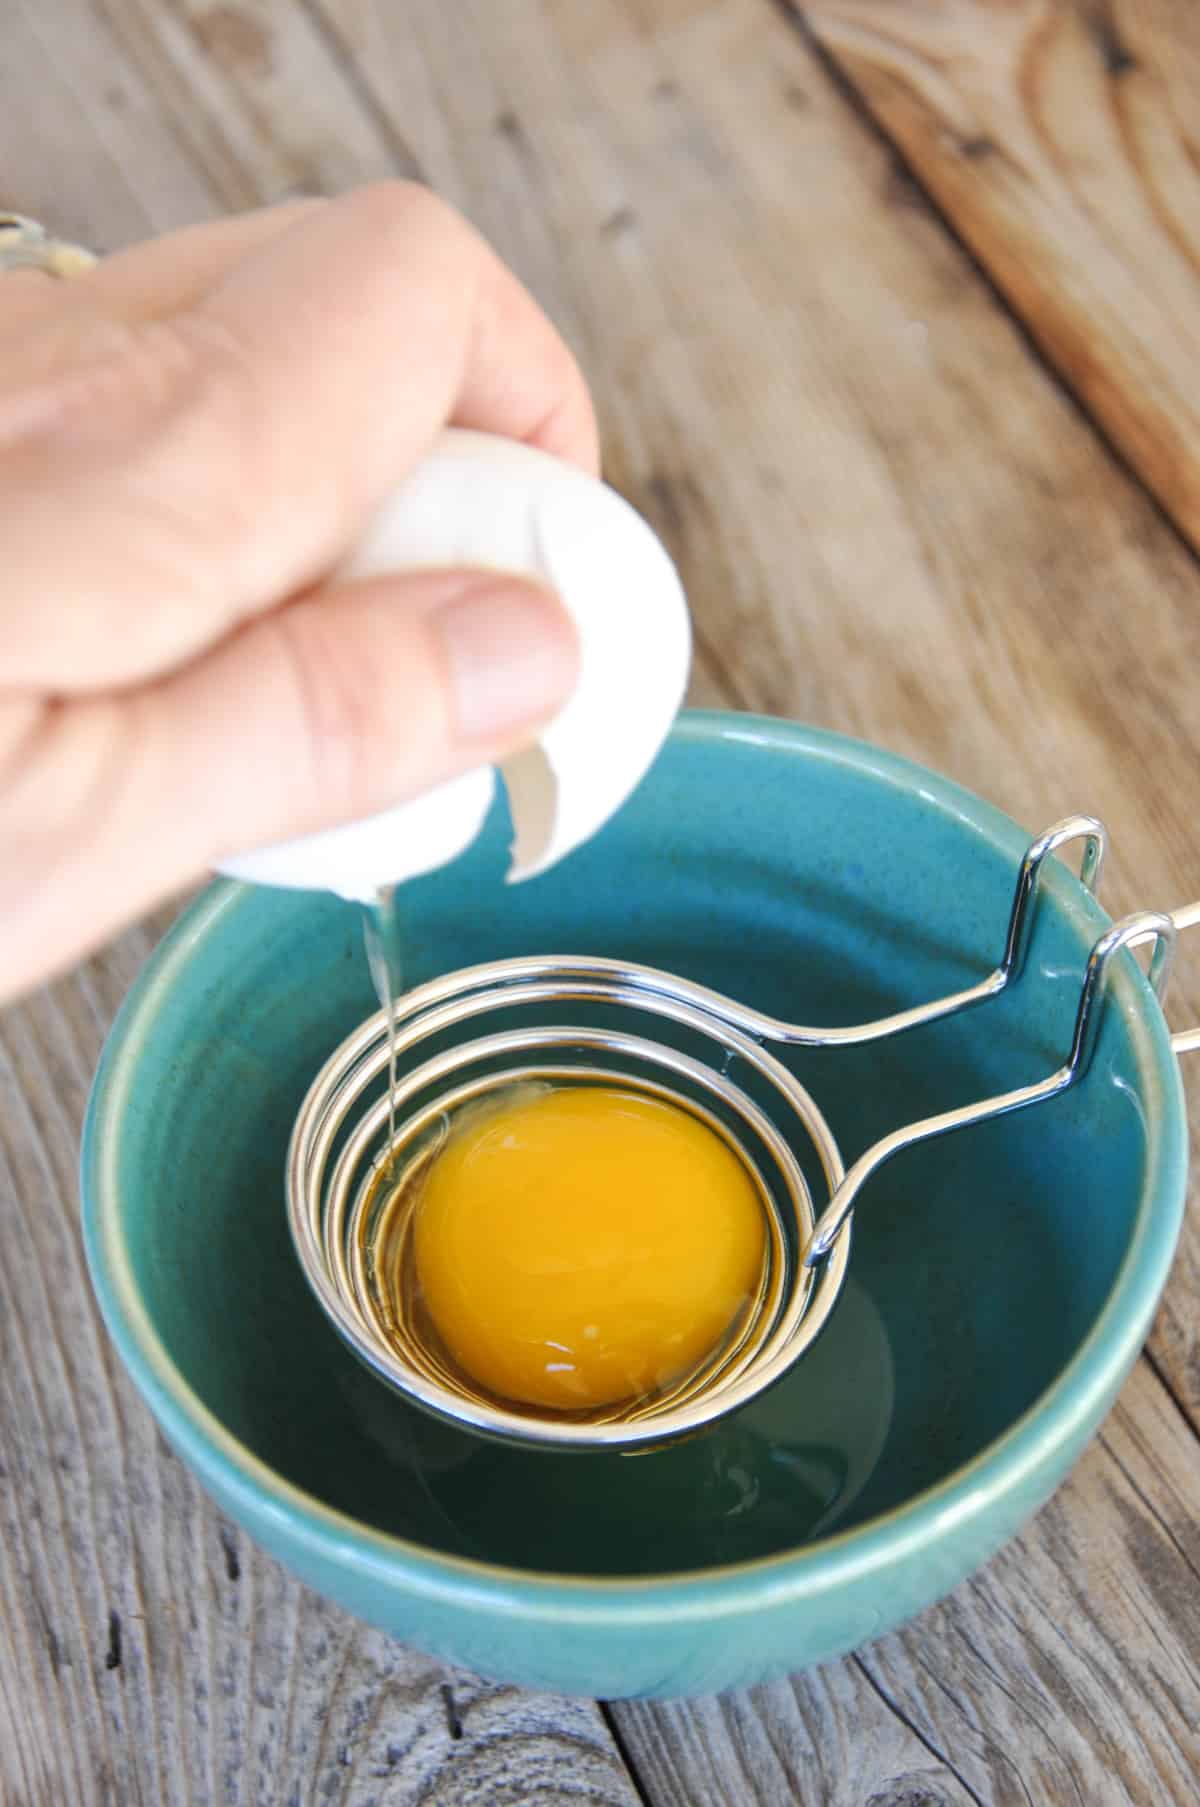 Cracking egg over egg separator to only get the egg whites